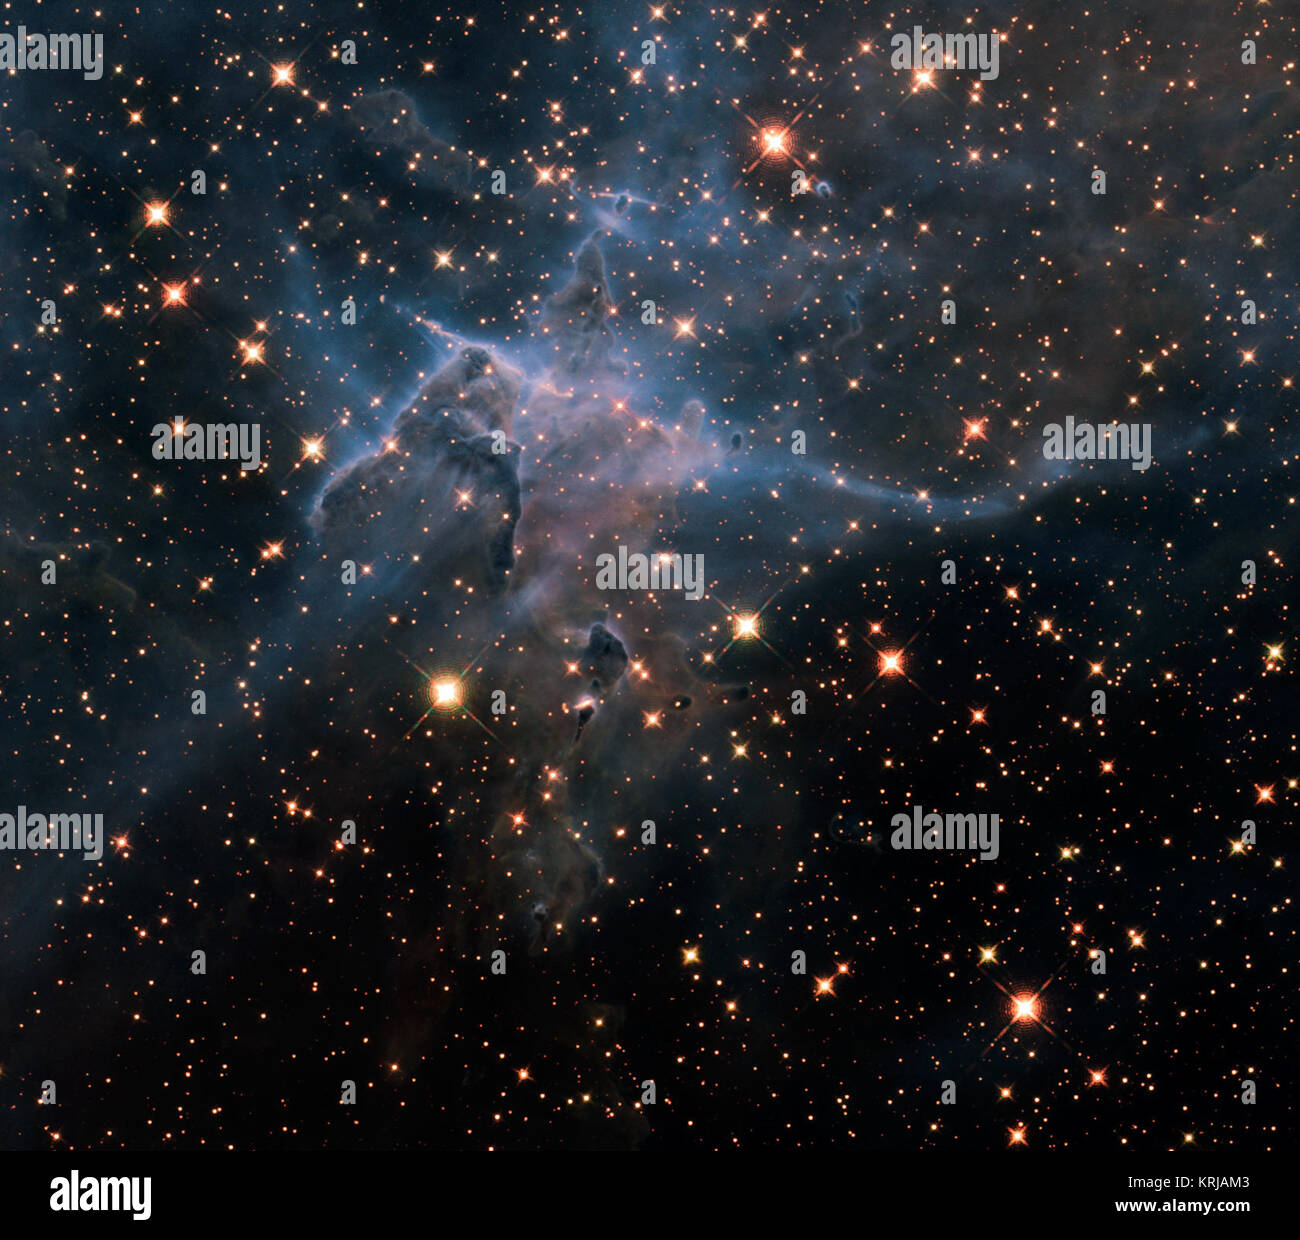 Immagine della NASA rilasciare 23 aprile 2010 questo è un NASA Telescopio Spaziale Hubble nel vicino infrarosso-immagine luminosa di una tre-anno luce-tall pilastro di gas e polvere che viene mangiato lontano dalla luce brillante da stelle vicine nella tempestosa vivaio stellare chiamato Carina Nebula, situato a 7.500 anni-luce di distanza nella costellazione meridionale carina. L'immagine ricorre il ventesimo anniversario di Hubble il lancio e la distribuzione in un orbita attorno alla terra. L'immagine rivela una pletora di stelle dietro il velo gassosi della nebulosa di parete di idrogeno, cucita con polvere. Il pilastro in primo piano diventa semi-transpa Foto Stock